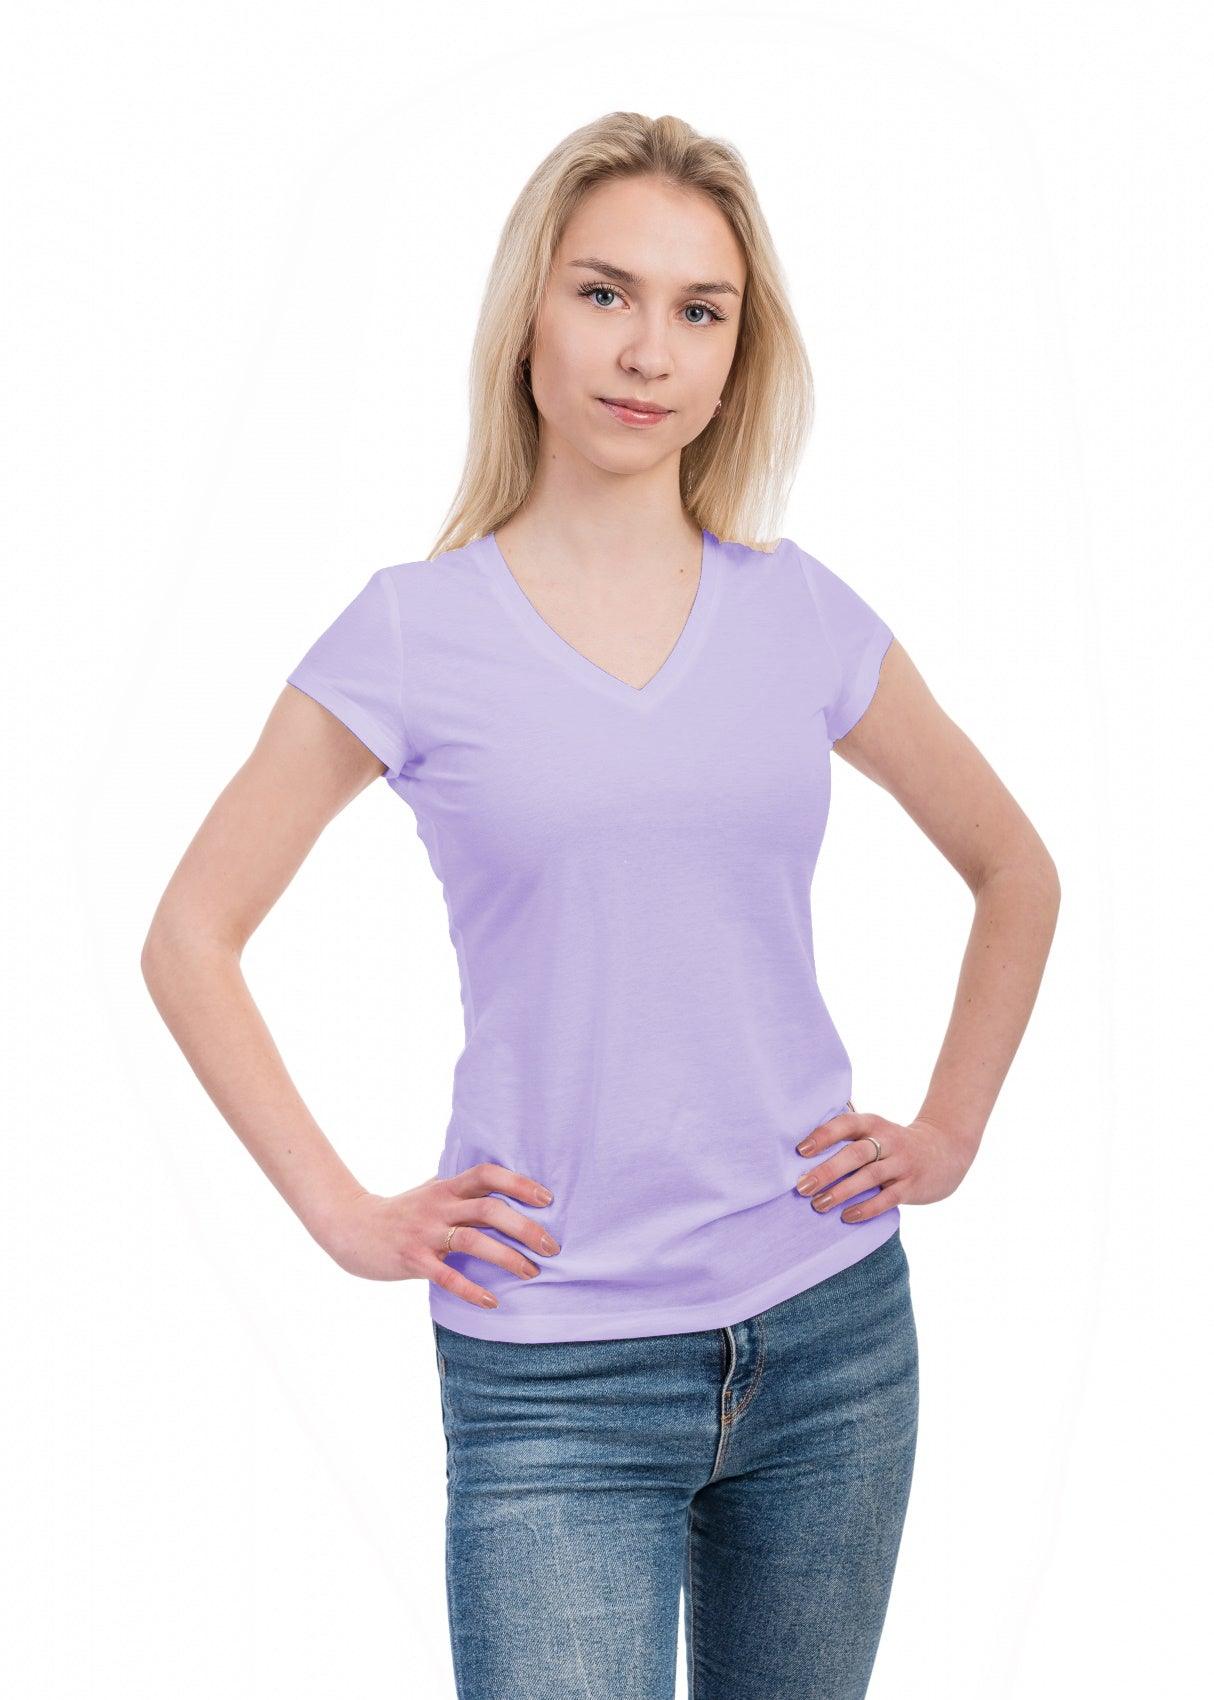 Smarttan lavendel (lilla) läbipäevituv naiste T-särk - Smarttan